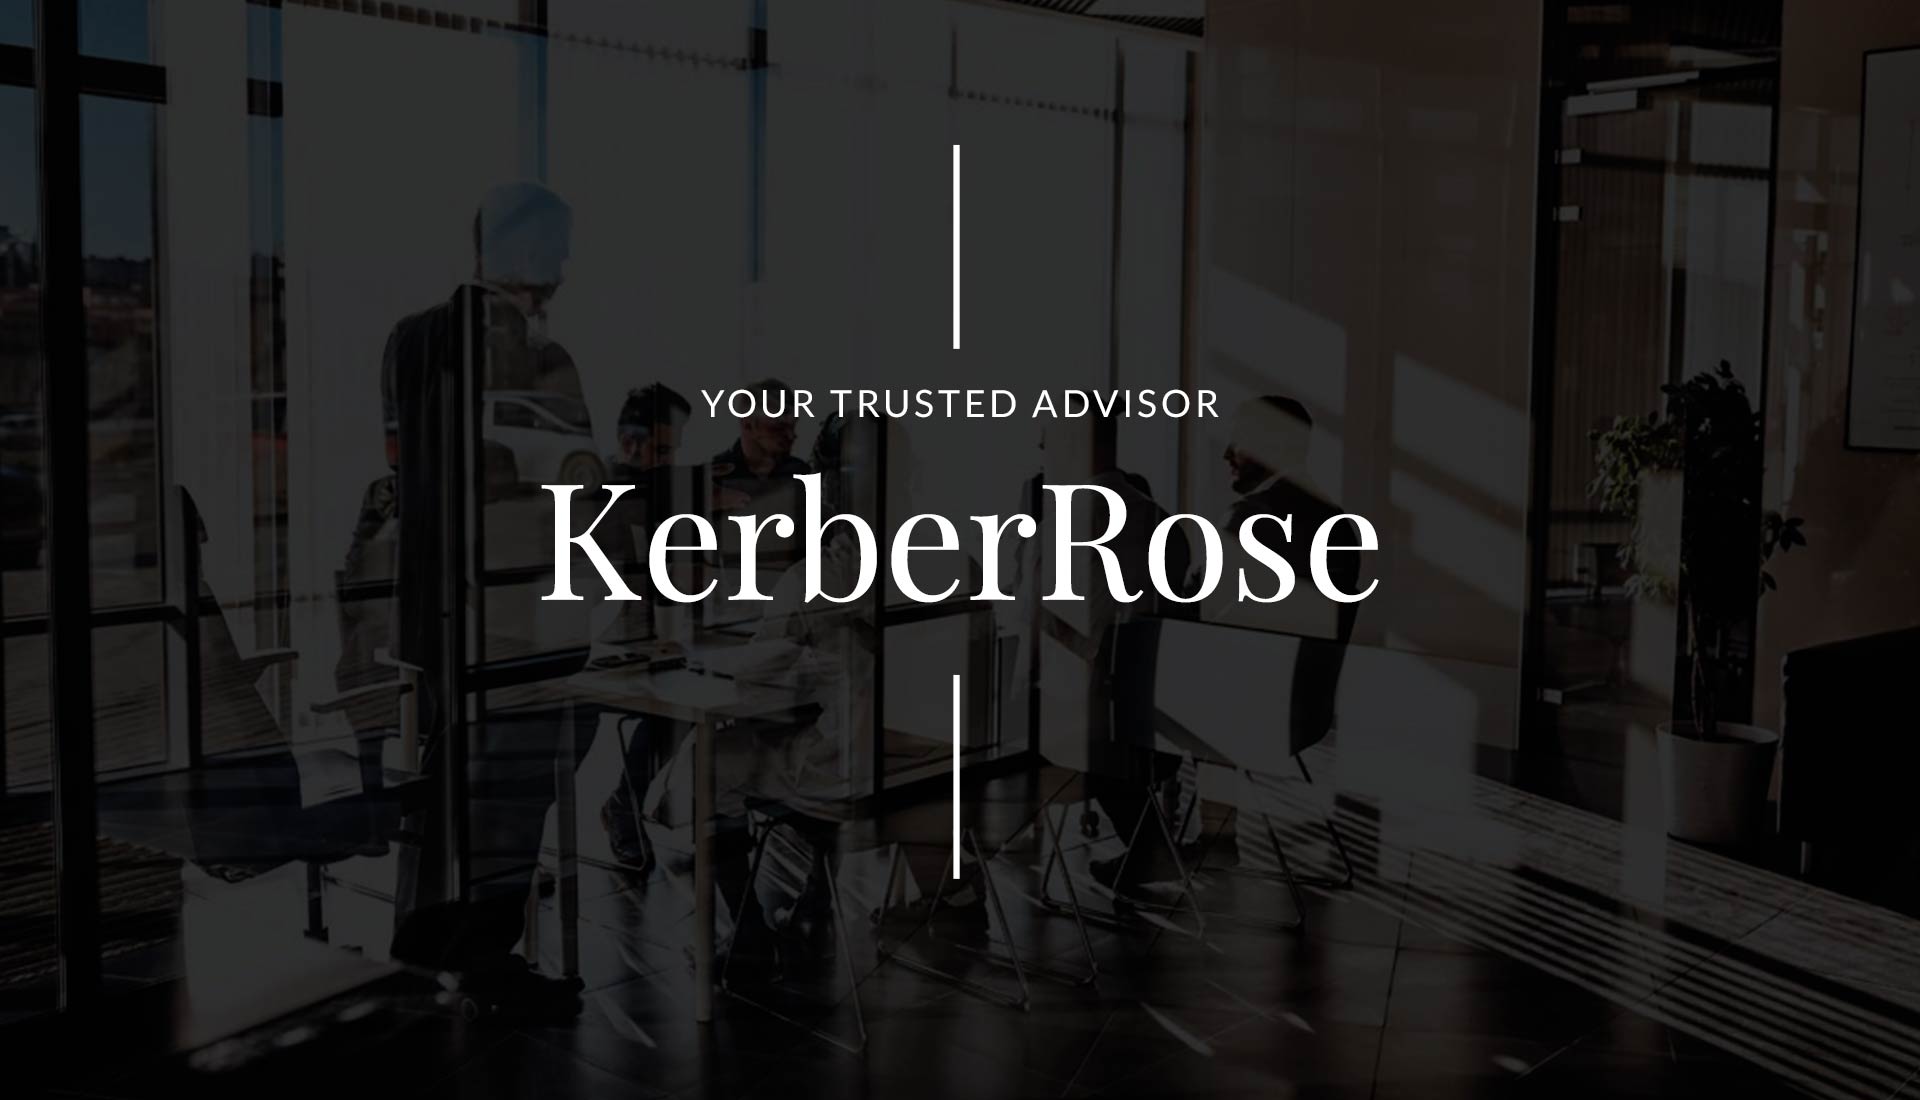 KerberRose | Your Trusted Advisor